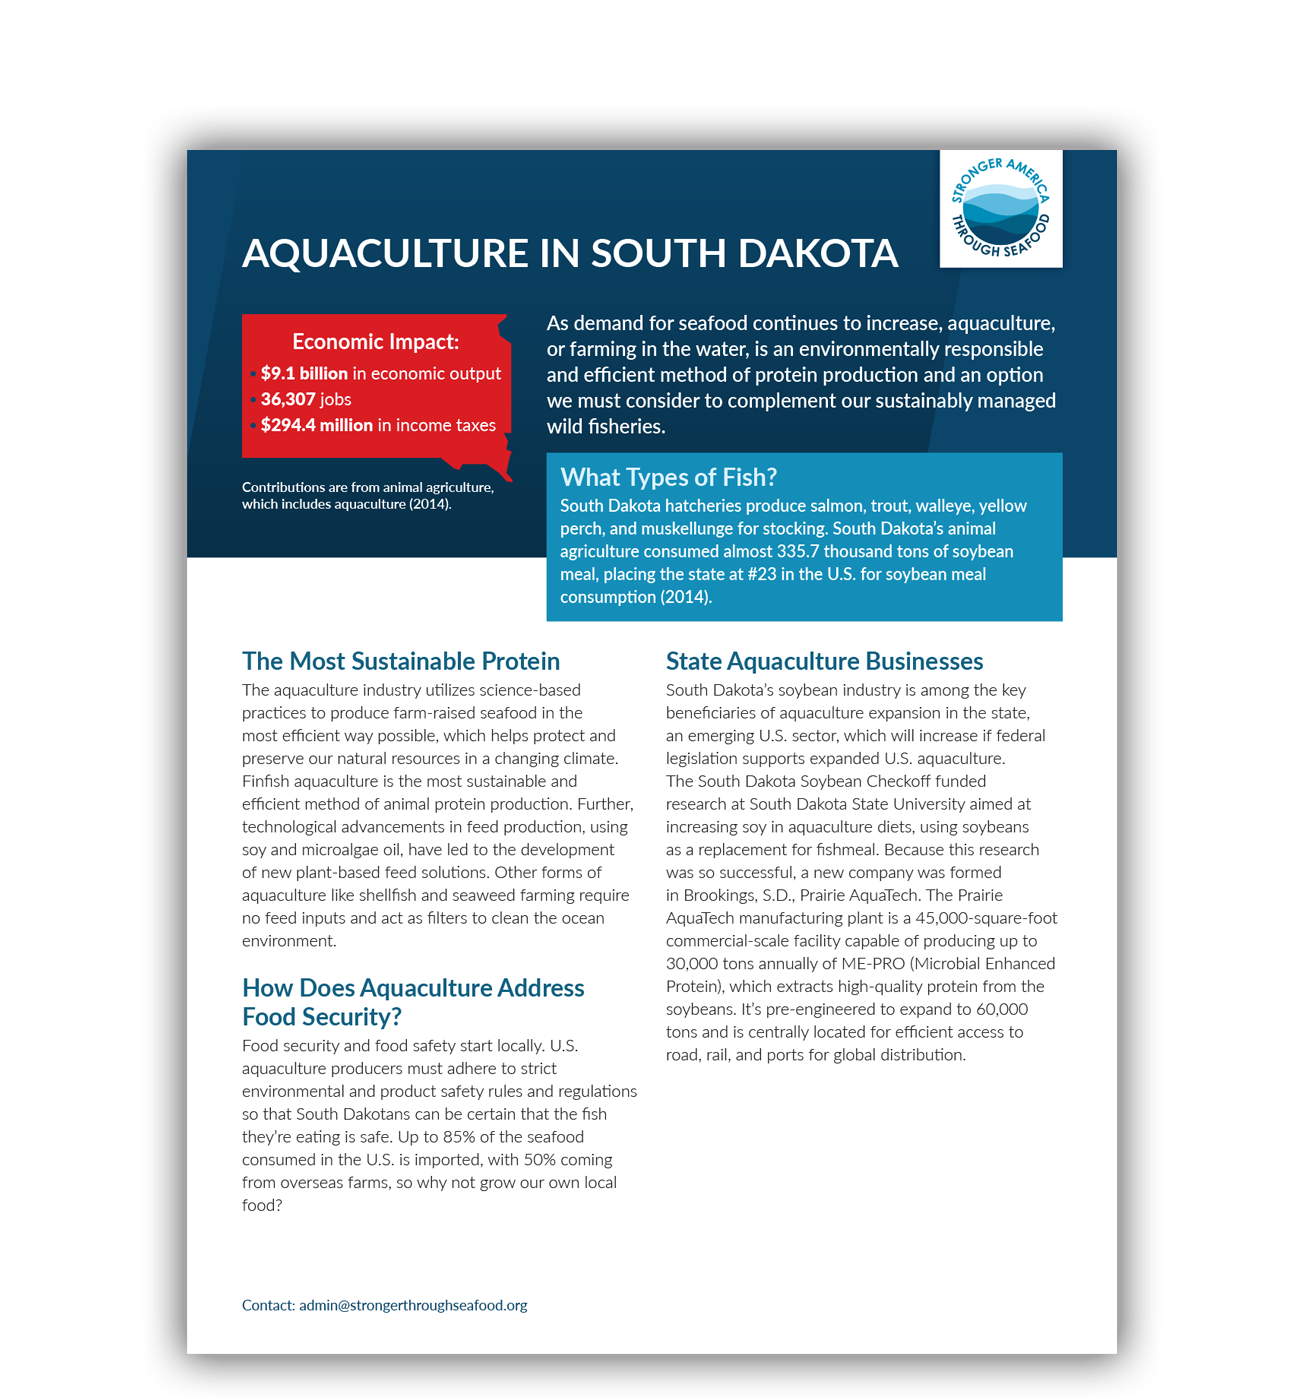 Aquaculture in South Dakota